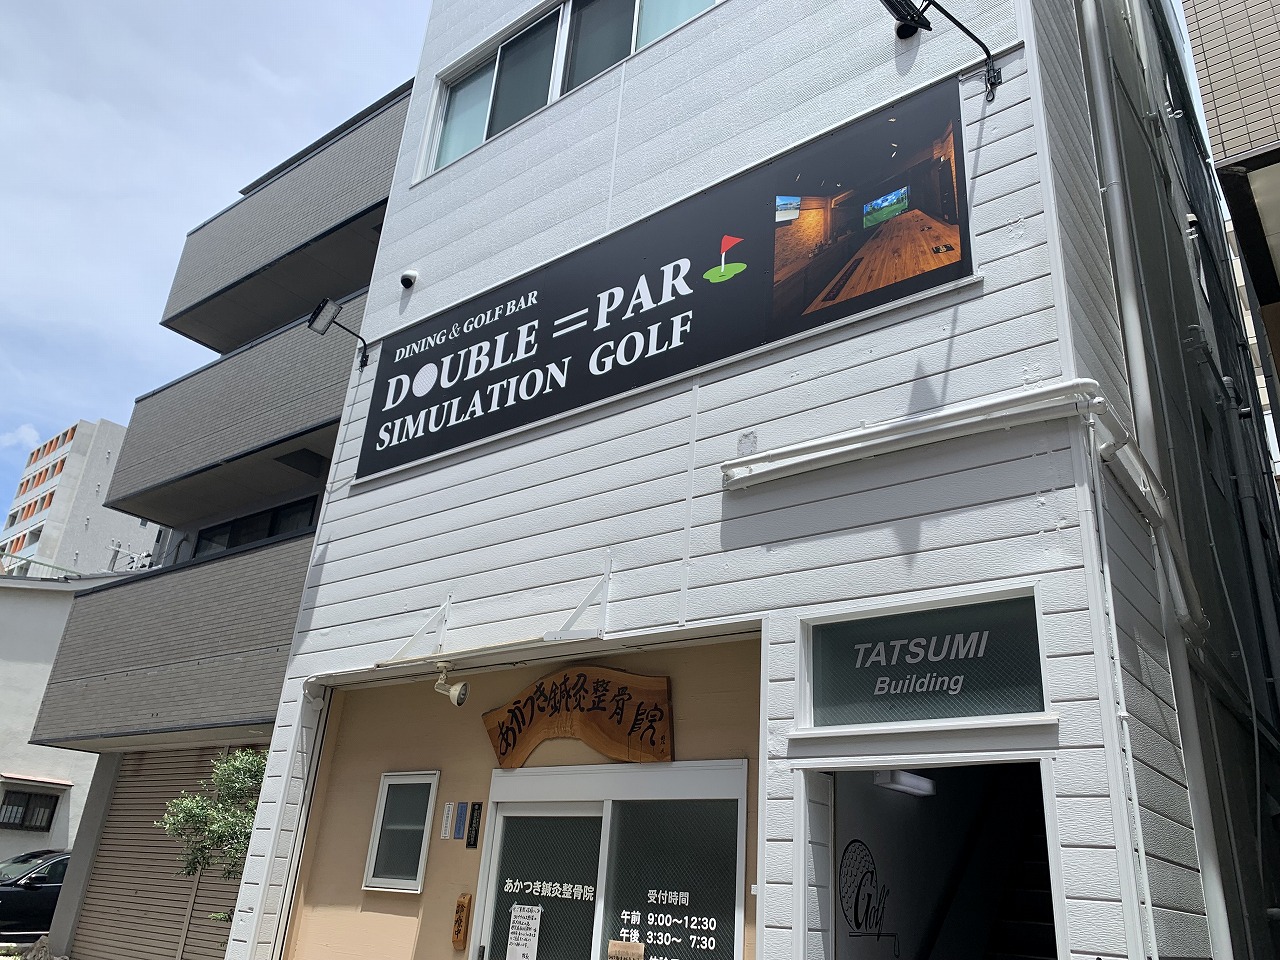 Dining&Golf Bar DOUBLE＝PAR